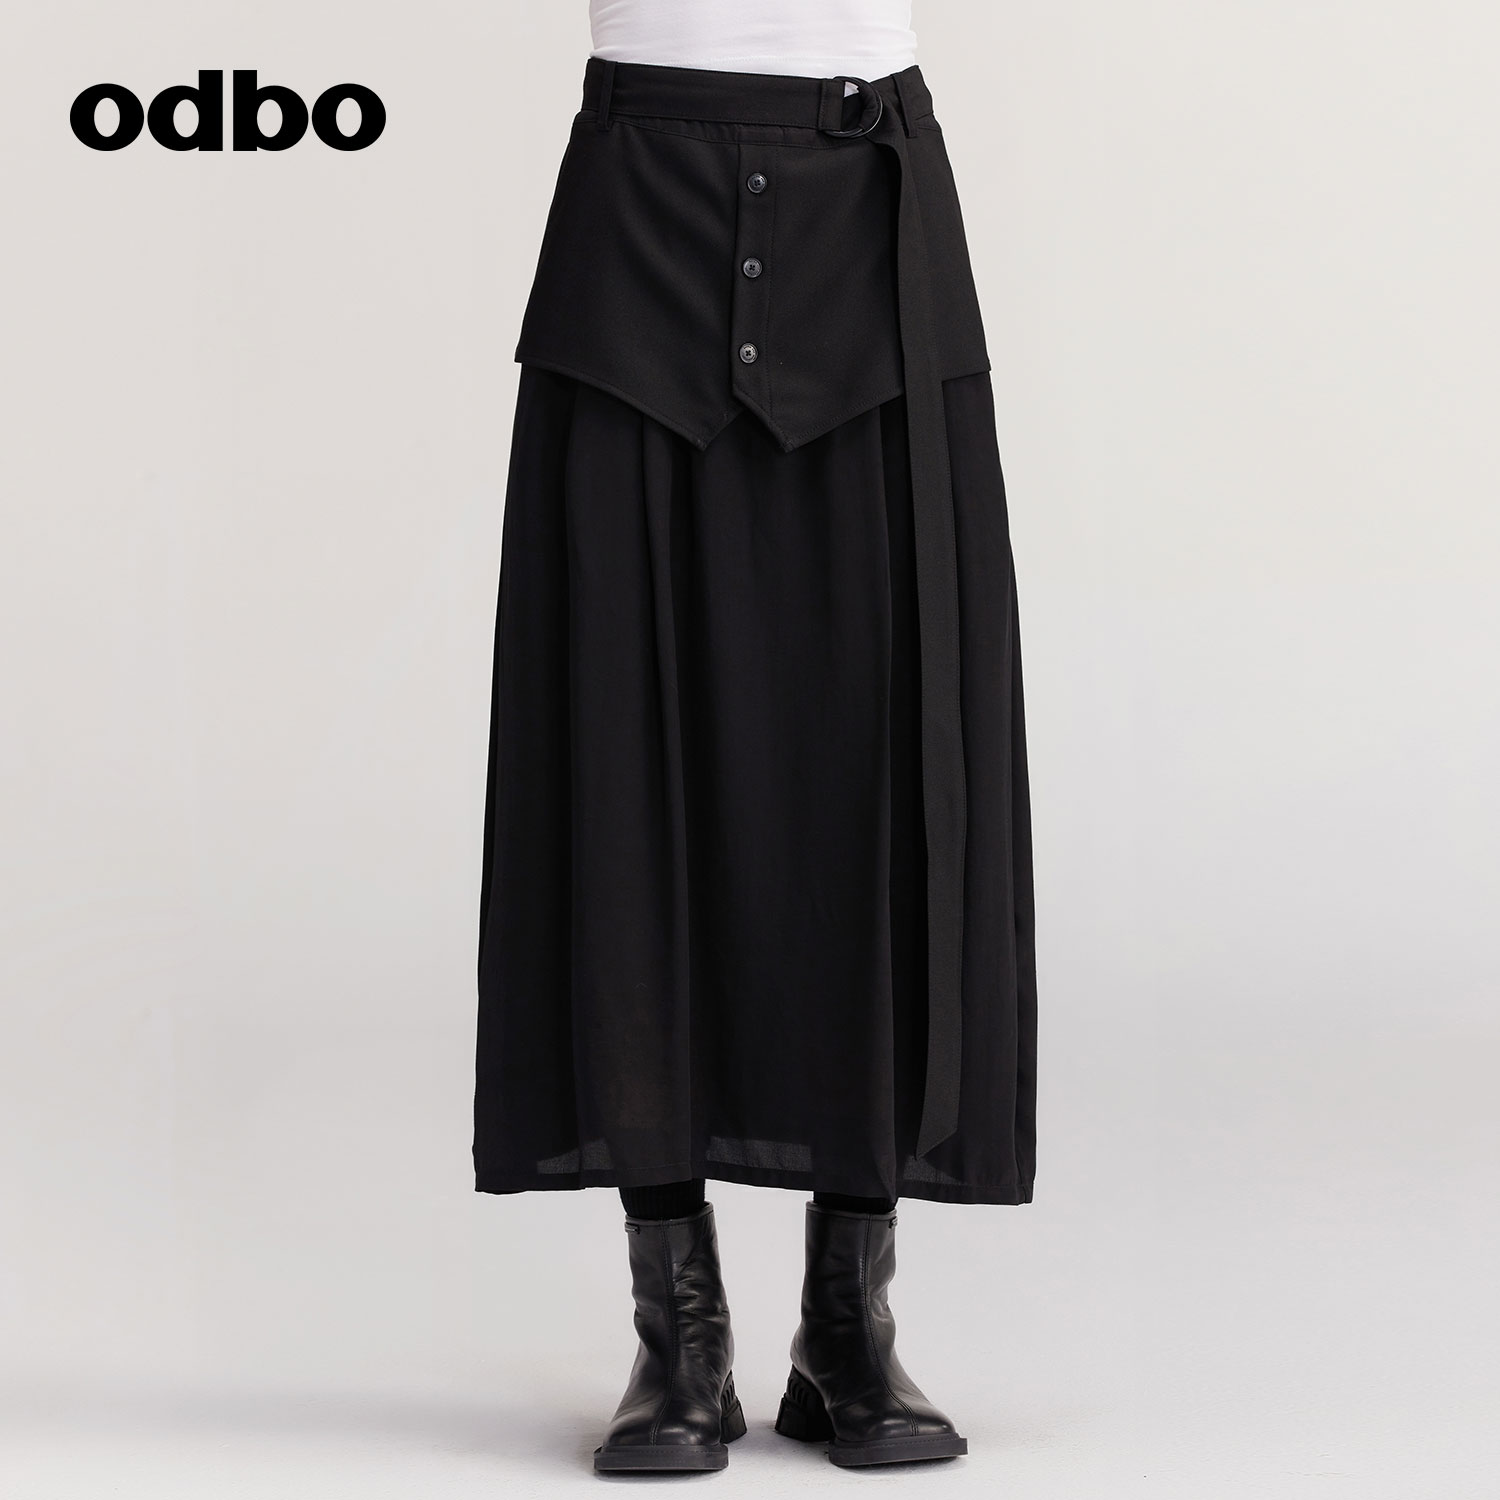 odbo/欧迪比欧原创设计感立体裁剪工装半身裙女秋装新款半裙